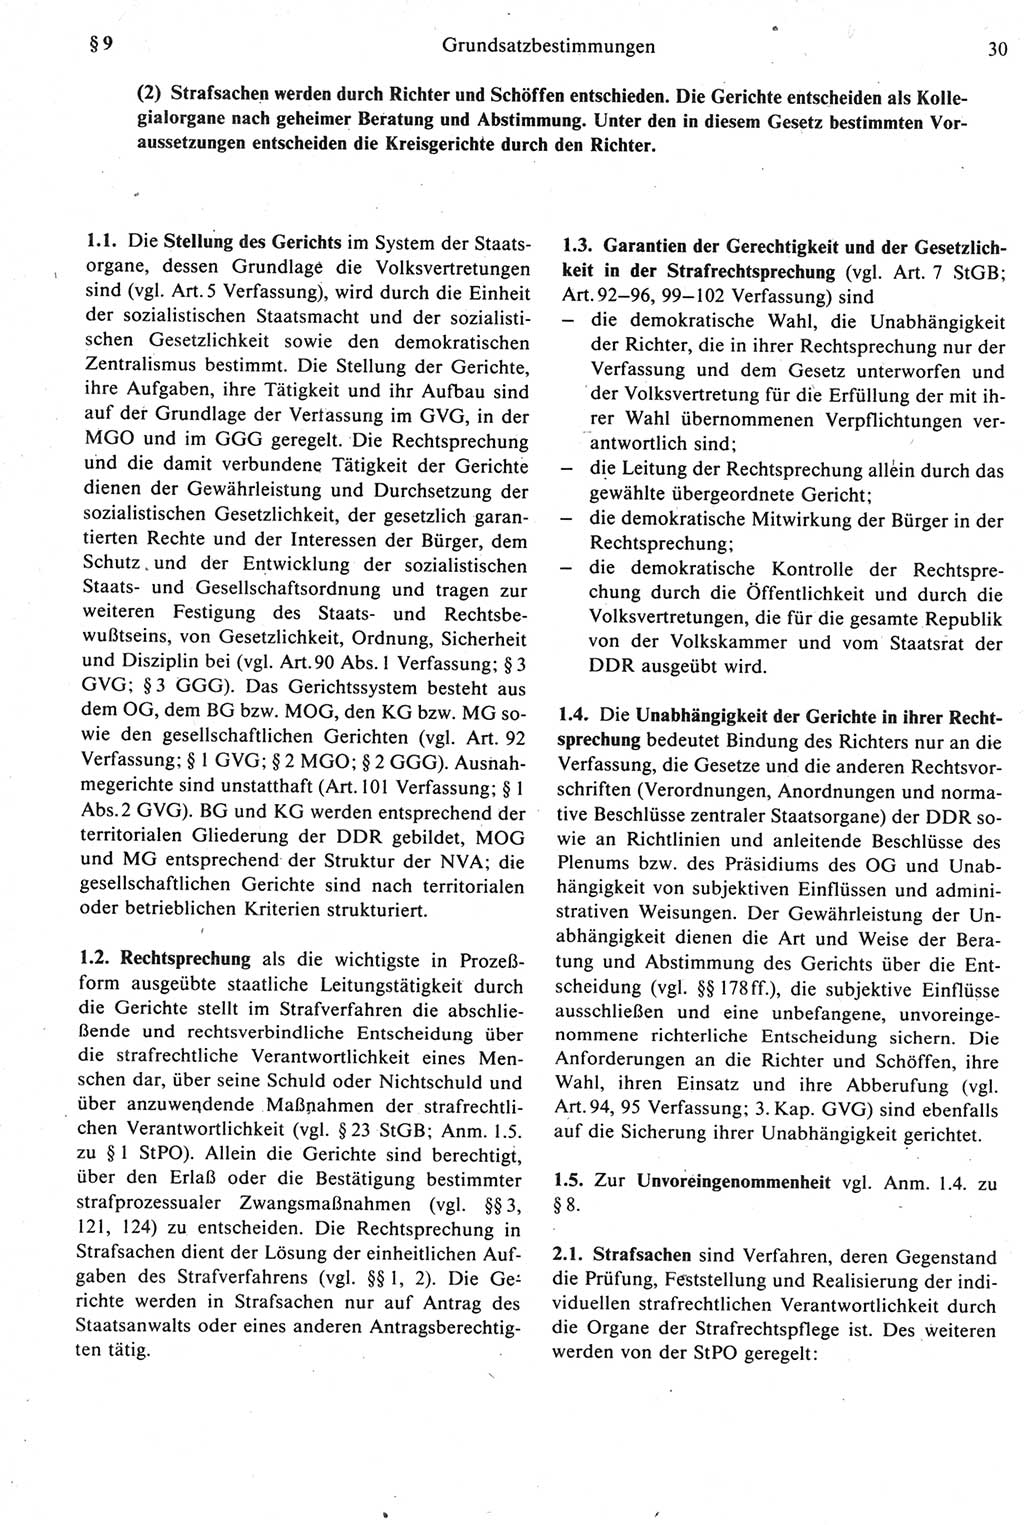 Strafprozeßrecht der DDR [Deutsche Demokratische Republik], Kommentar zur Strafprozeßordnung (StPO) 1987, Seite 30 (Strafprozeßr. DDR Komm. StPO 1987, S. 30)